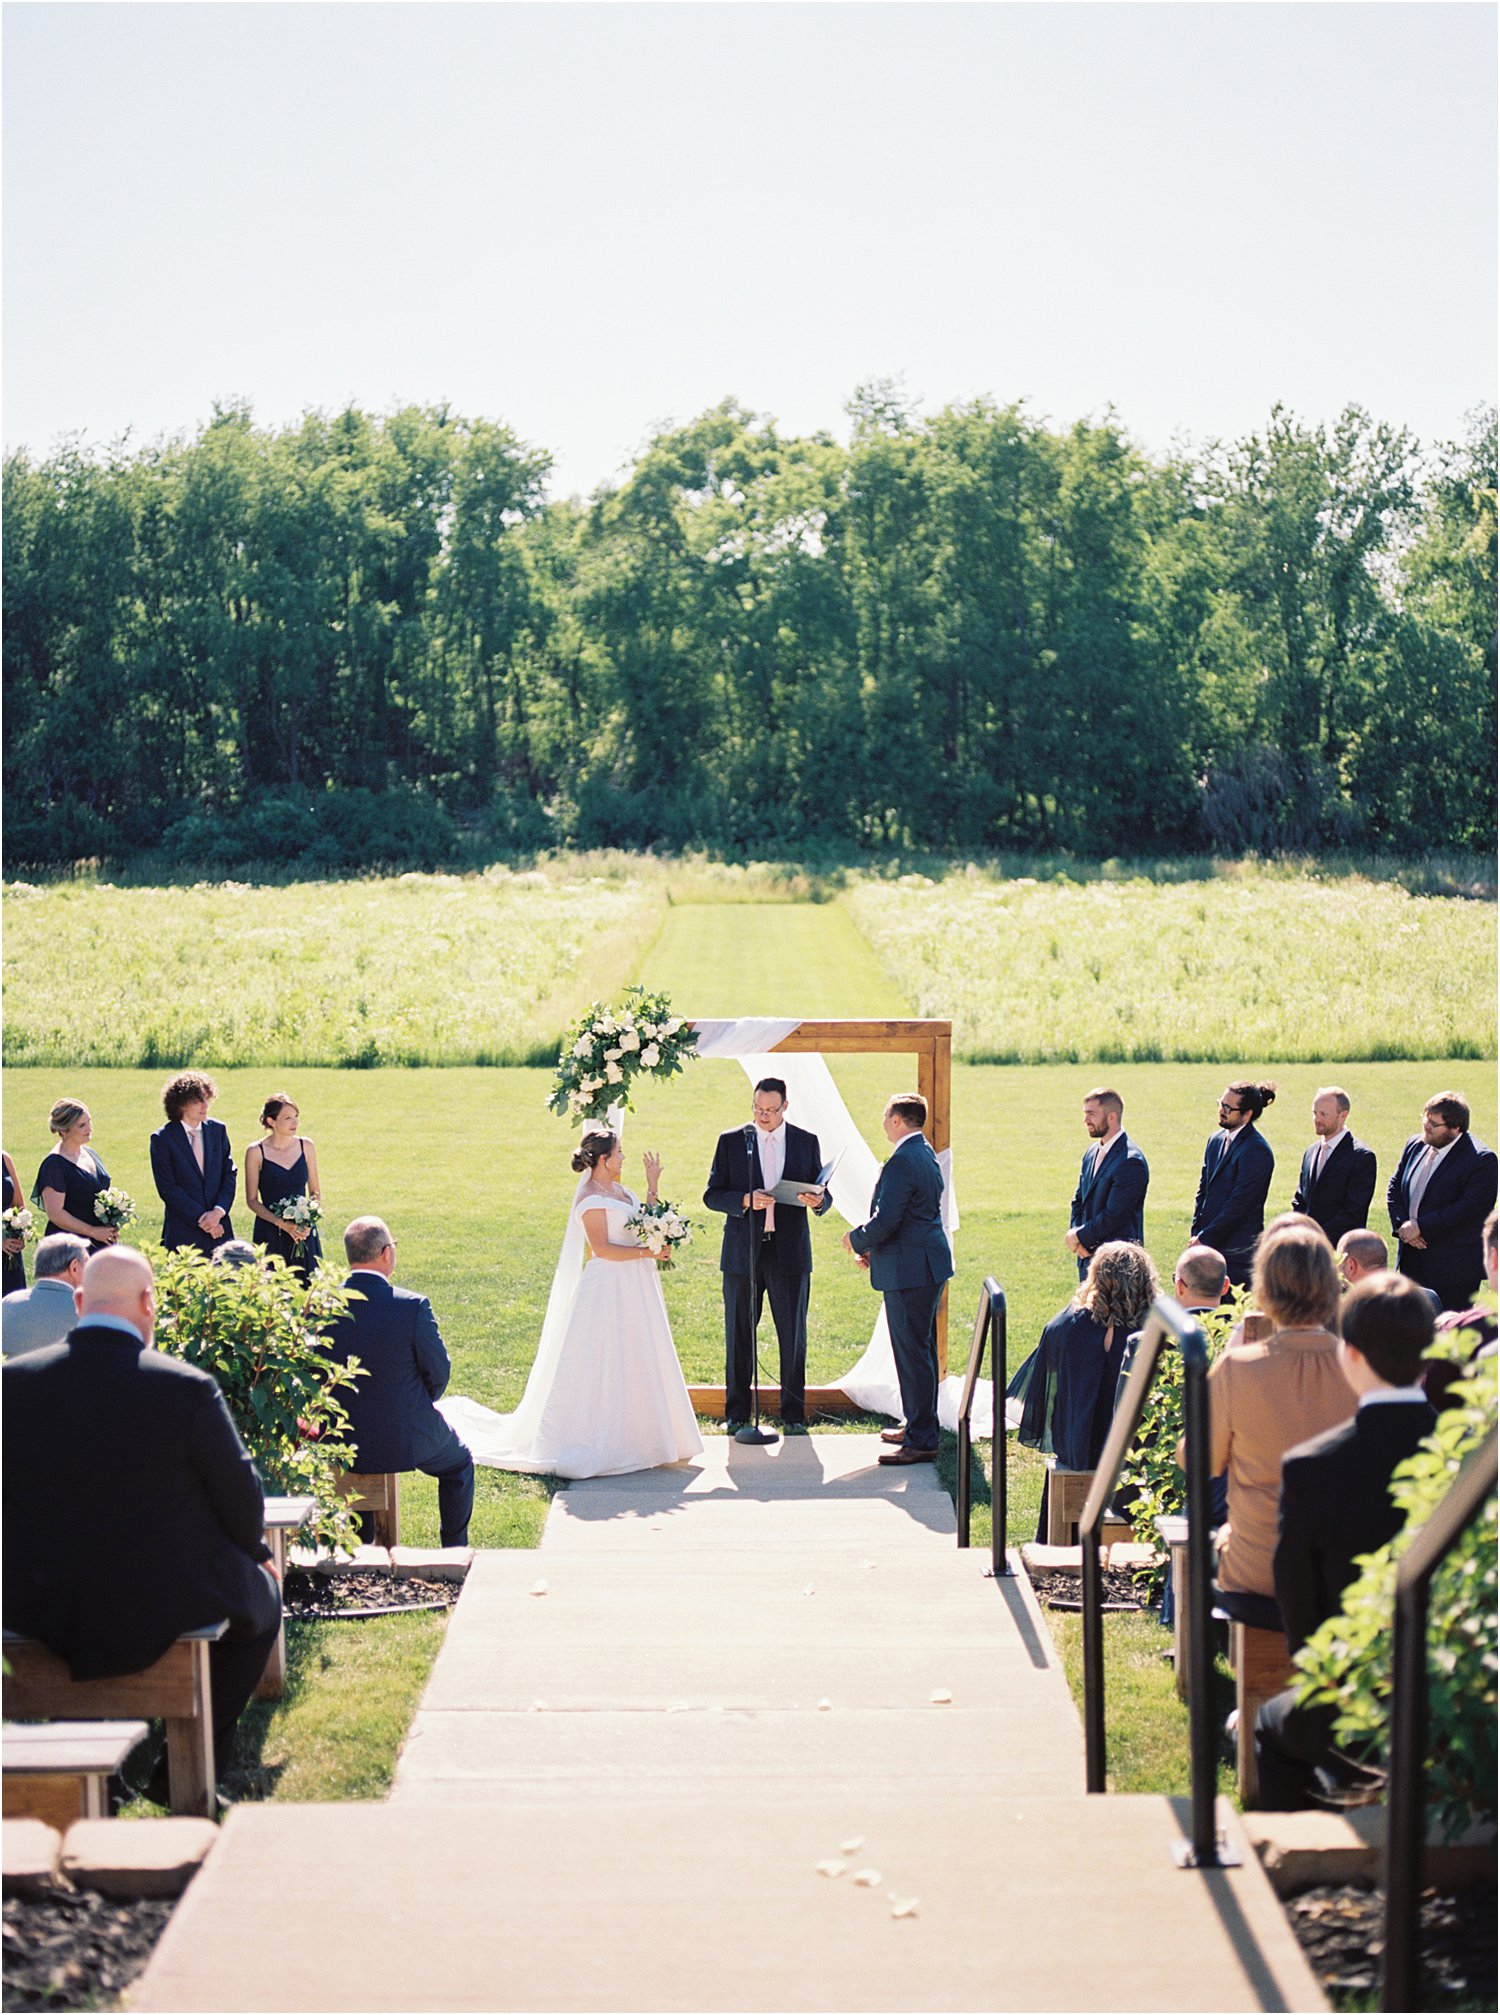 Film Photography of wedding ceremony